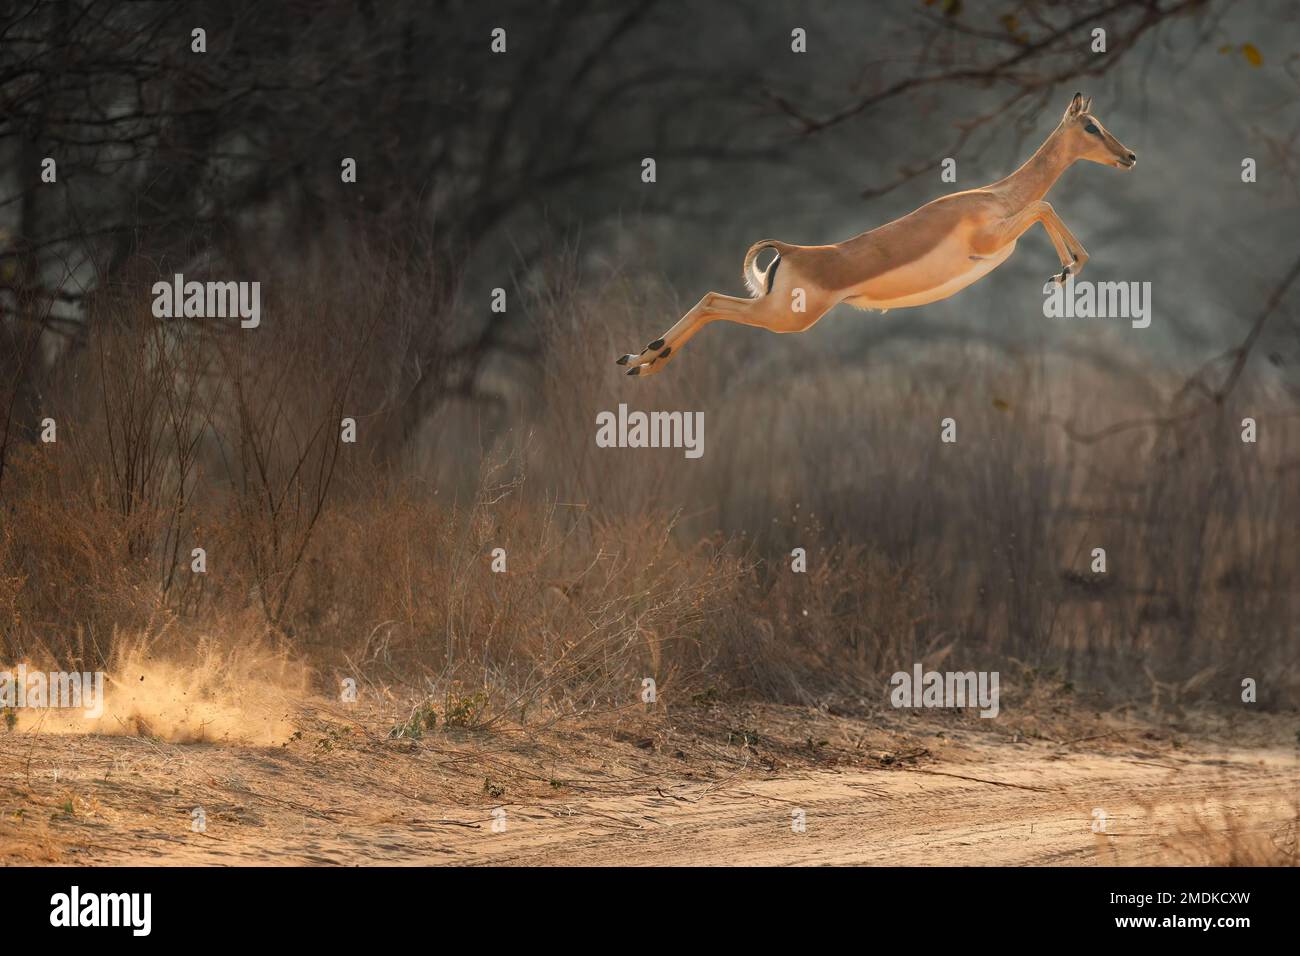 Une femme impala fait un bond dans l'air et aussi au loin - Mana pools National Park, Zimbabwe, Afrique. Banque D'Images